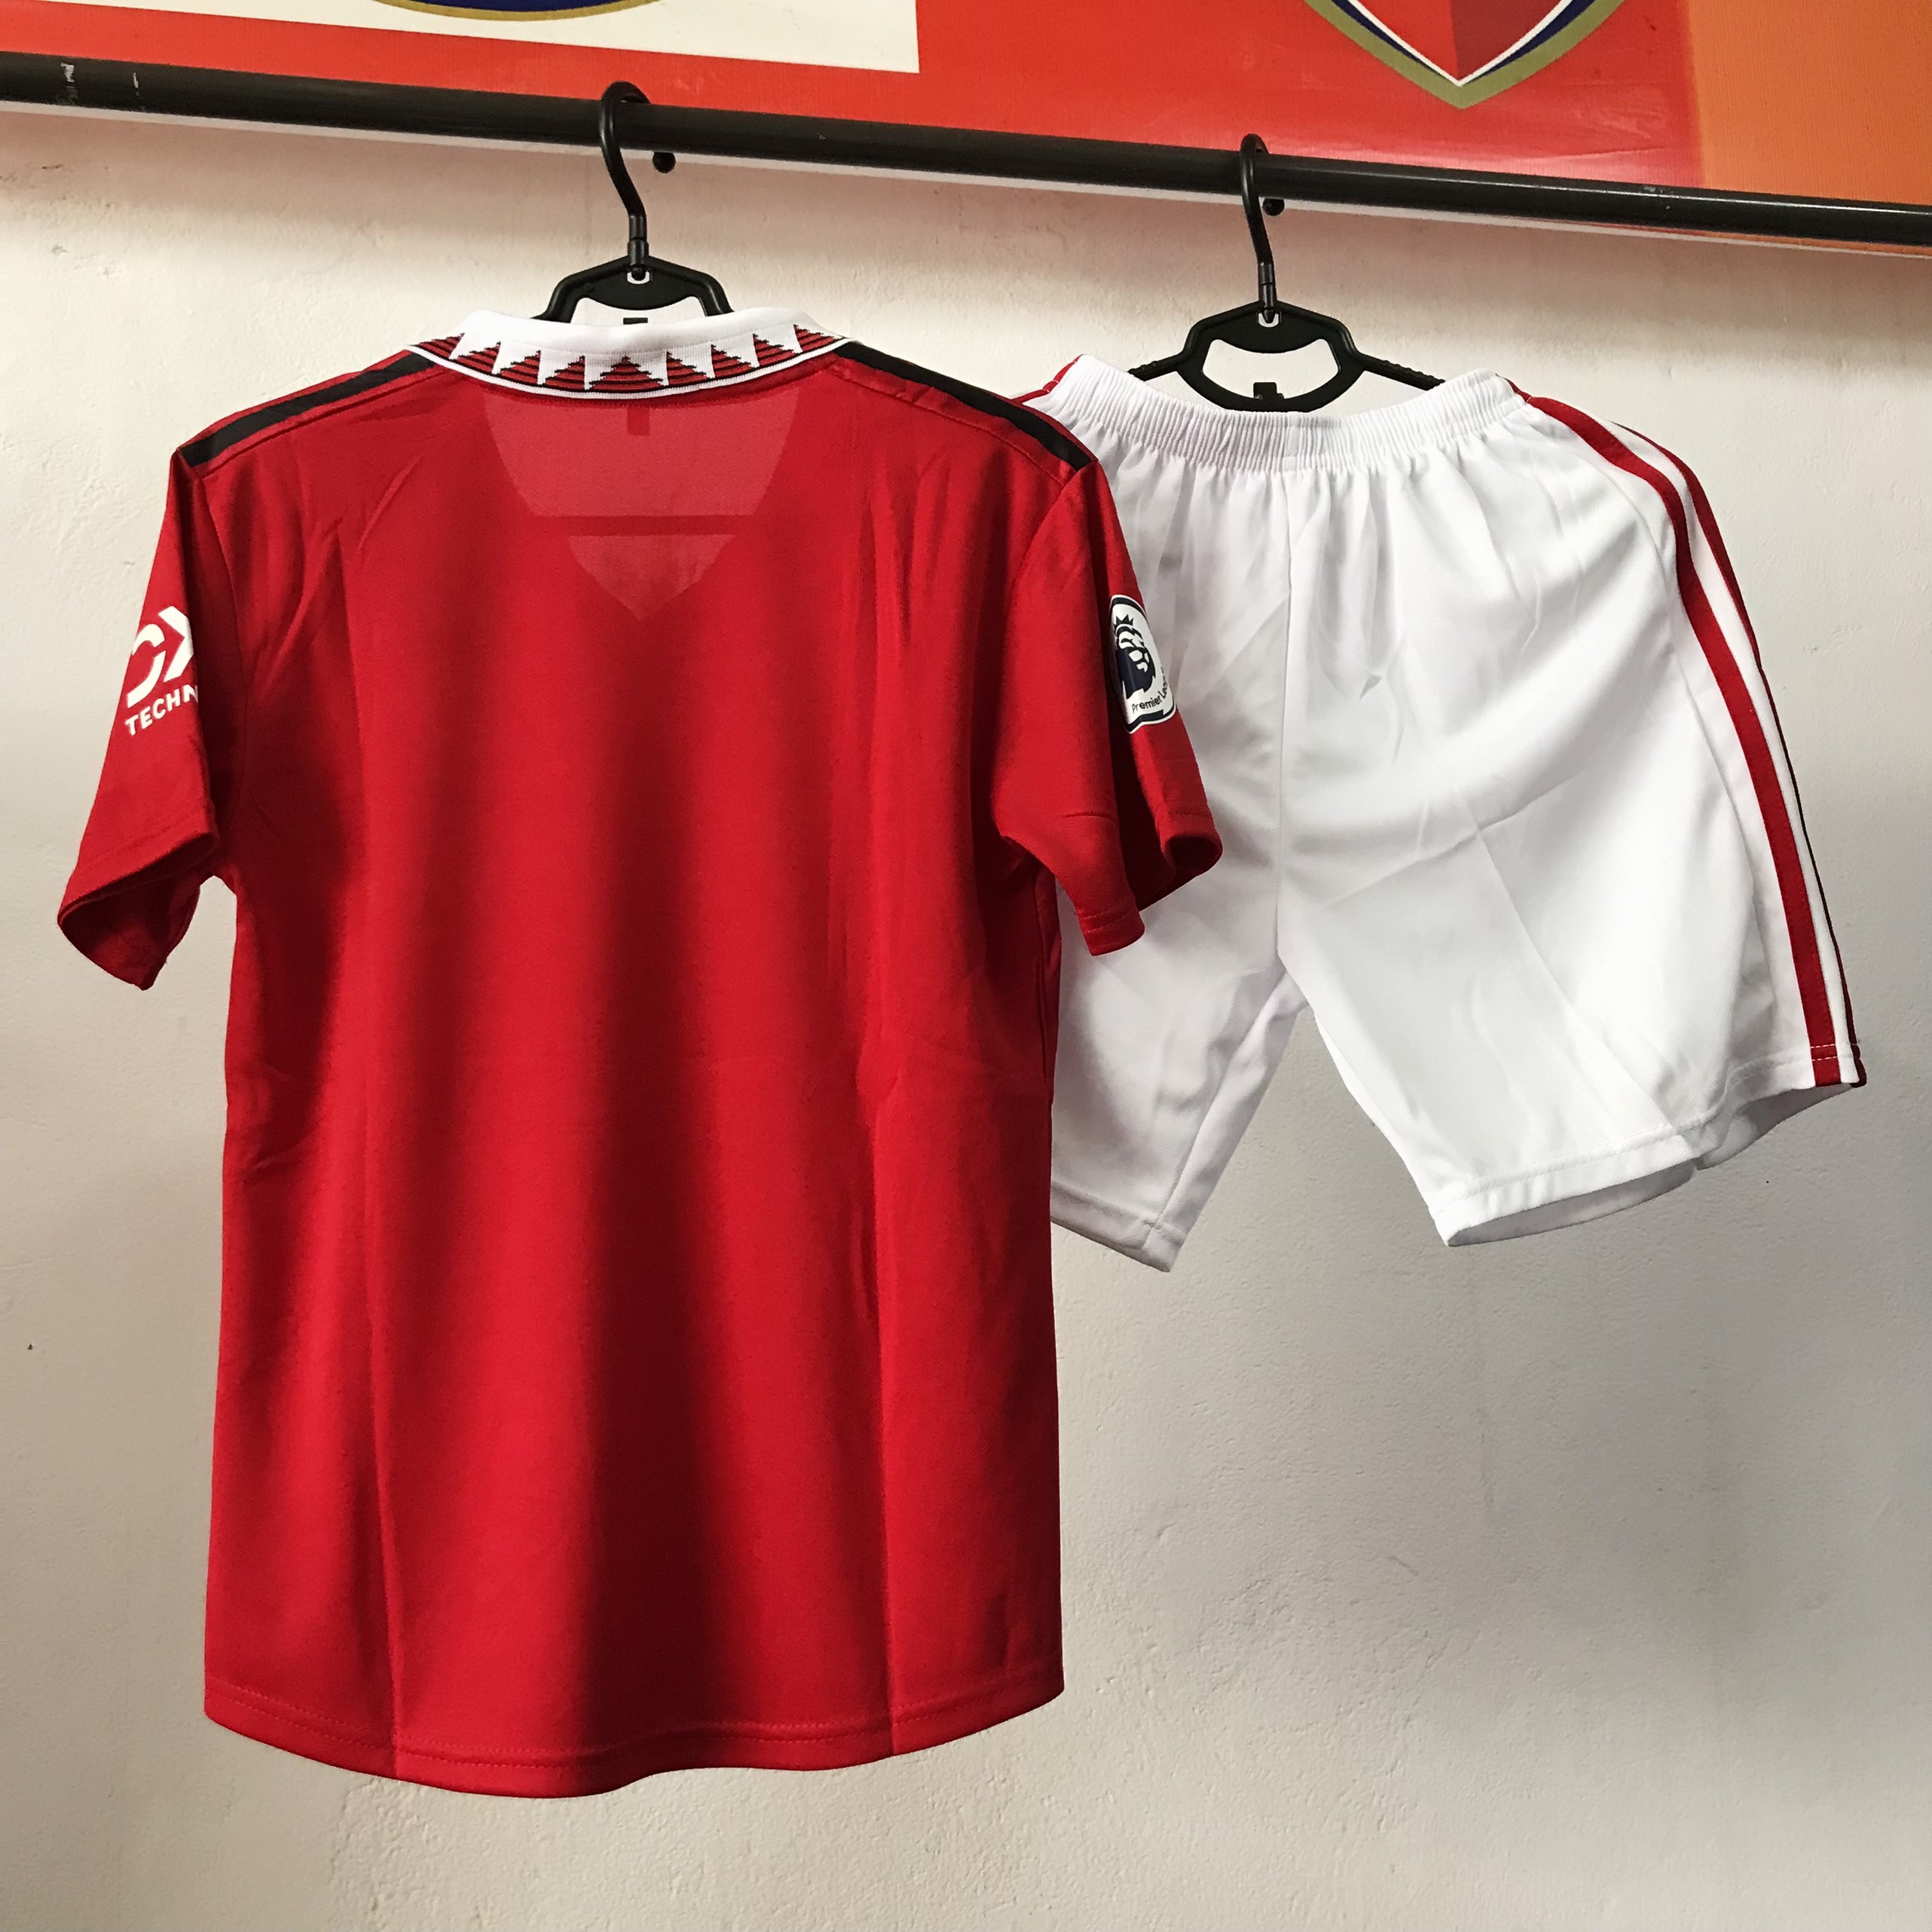 Hót Hót mẫu áo đá bóng trẻ em cao cấp nhất năm CLB  MU đỏ